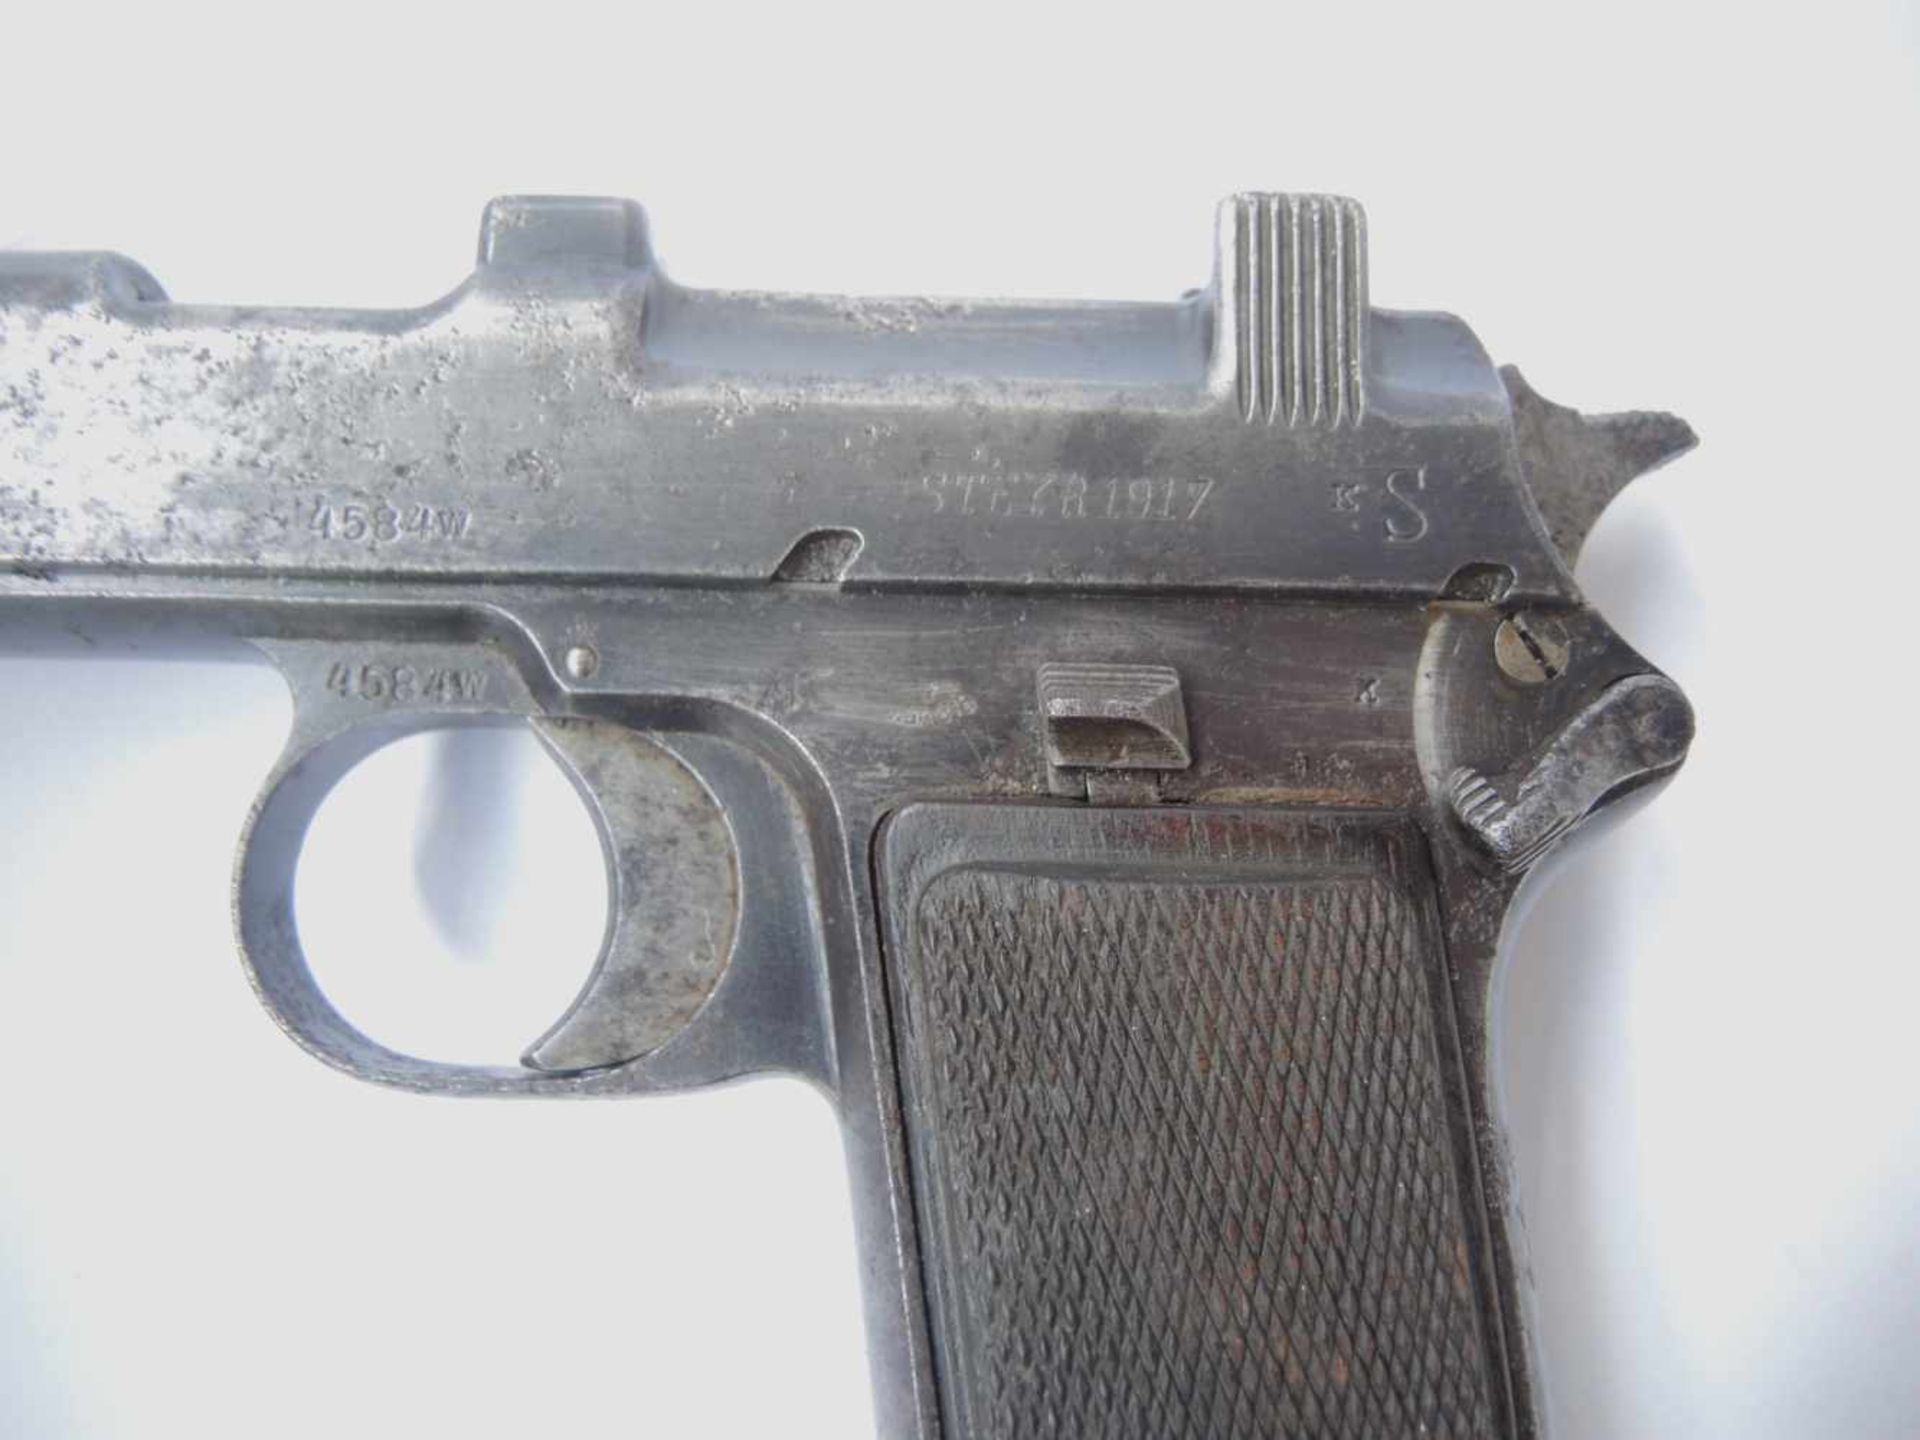 Pistolet Steyr 1917 Plaquettes en bois. Marquages Steyr 1917 , chargeur présent. Numéro 4584W . A - Bild 3 aus 4